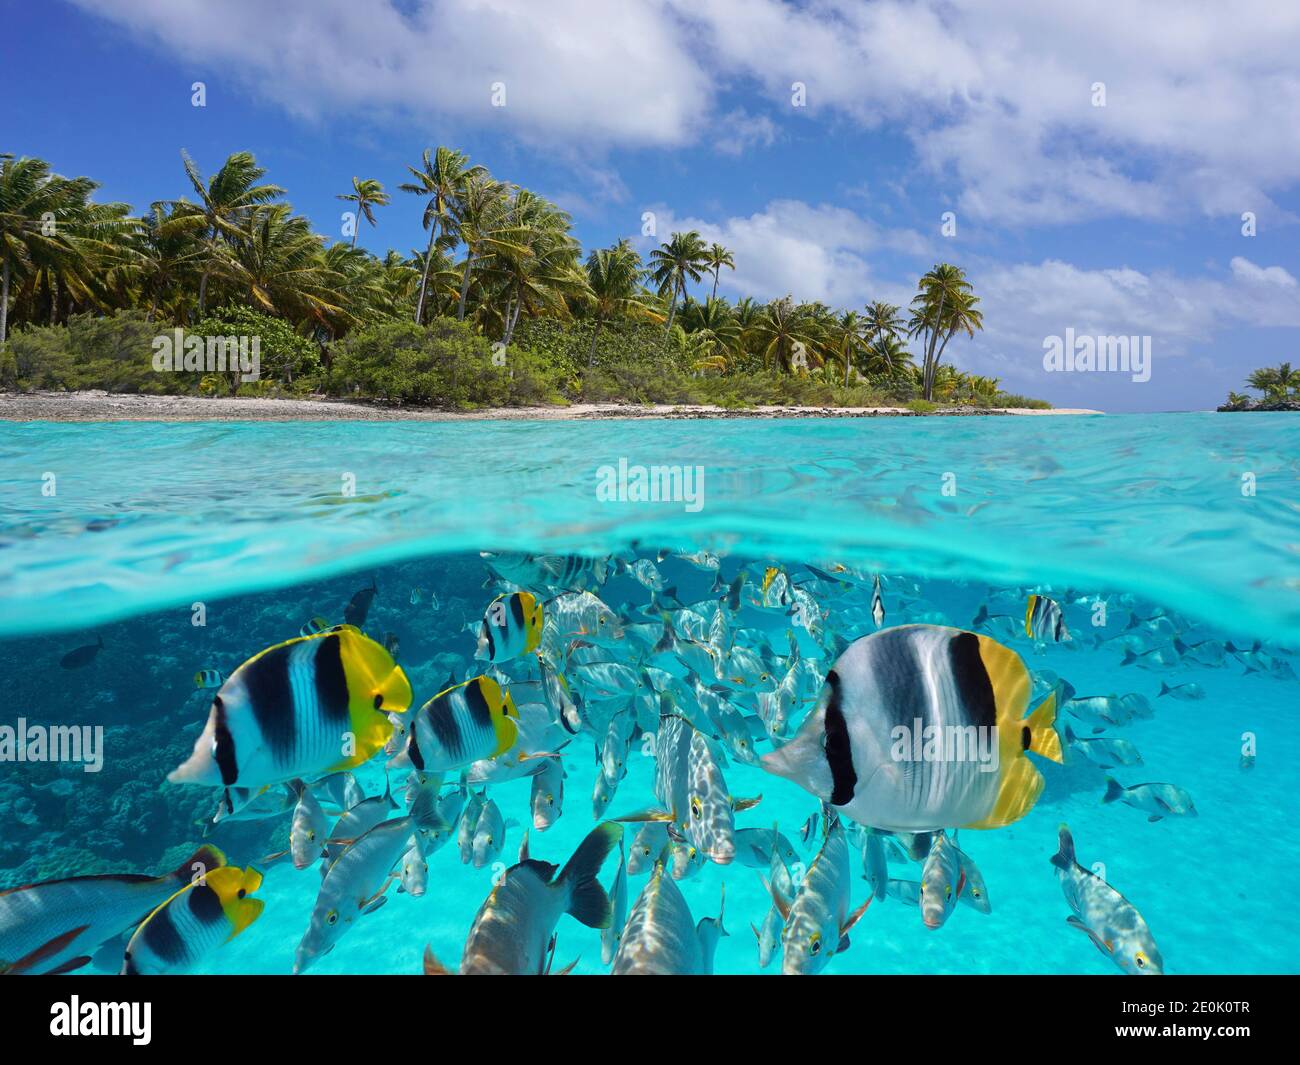 Mare tropicale sopra e sotto l'acqua, costa dell'isola e gruppo di pesci sott'acqua, oceano Pacifico, Polinesia francese, Oceania Foto Stock